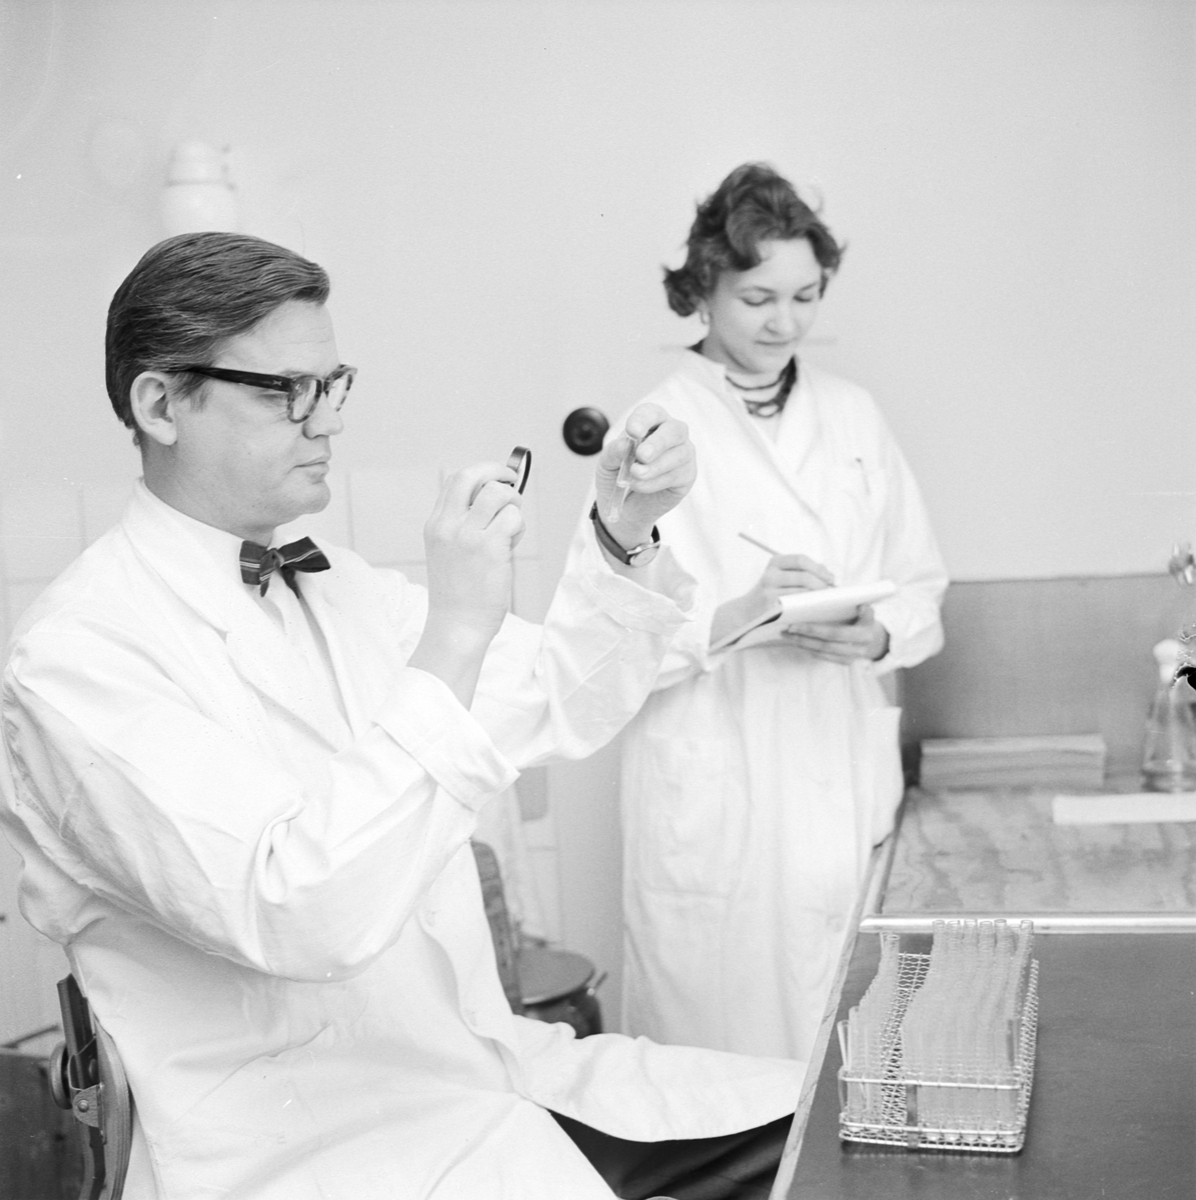 Hygienisk-bakteriologiska institutionen, laborator Gunnar Laurell med sköterska, Uppsala 1960